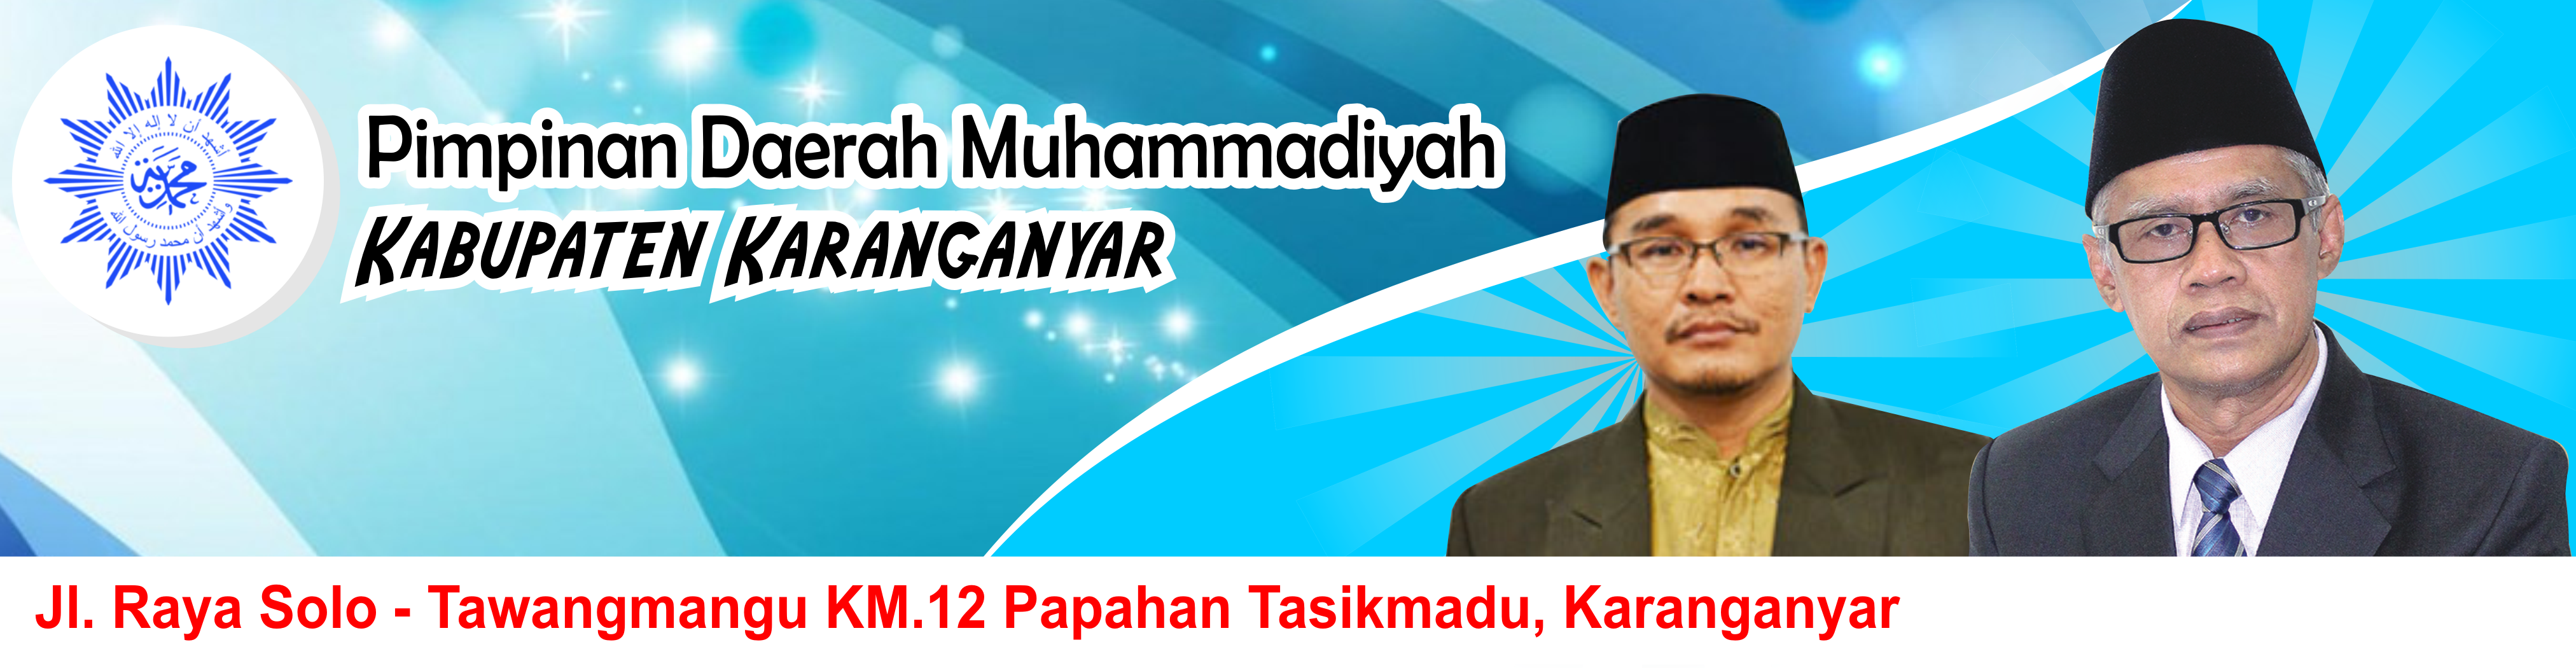  Pimpinan Daerah Muhammadiyah Kabupaten Karanganyar